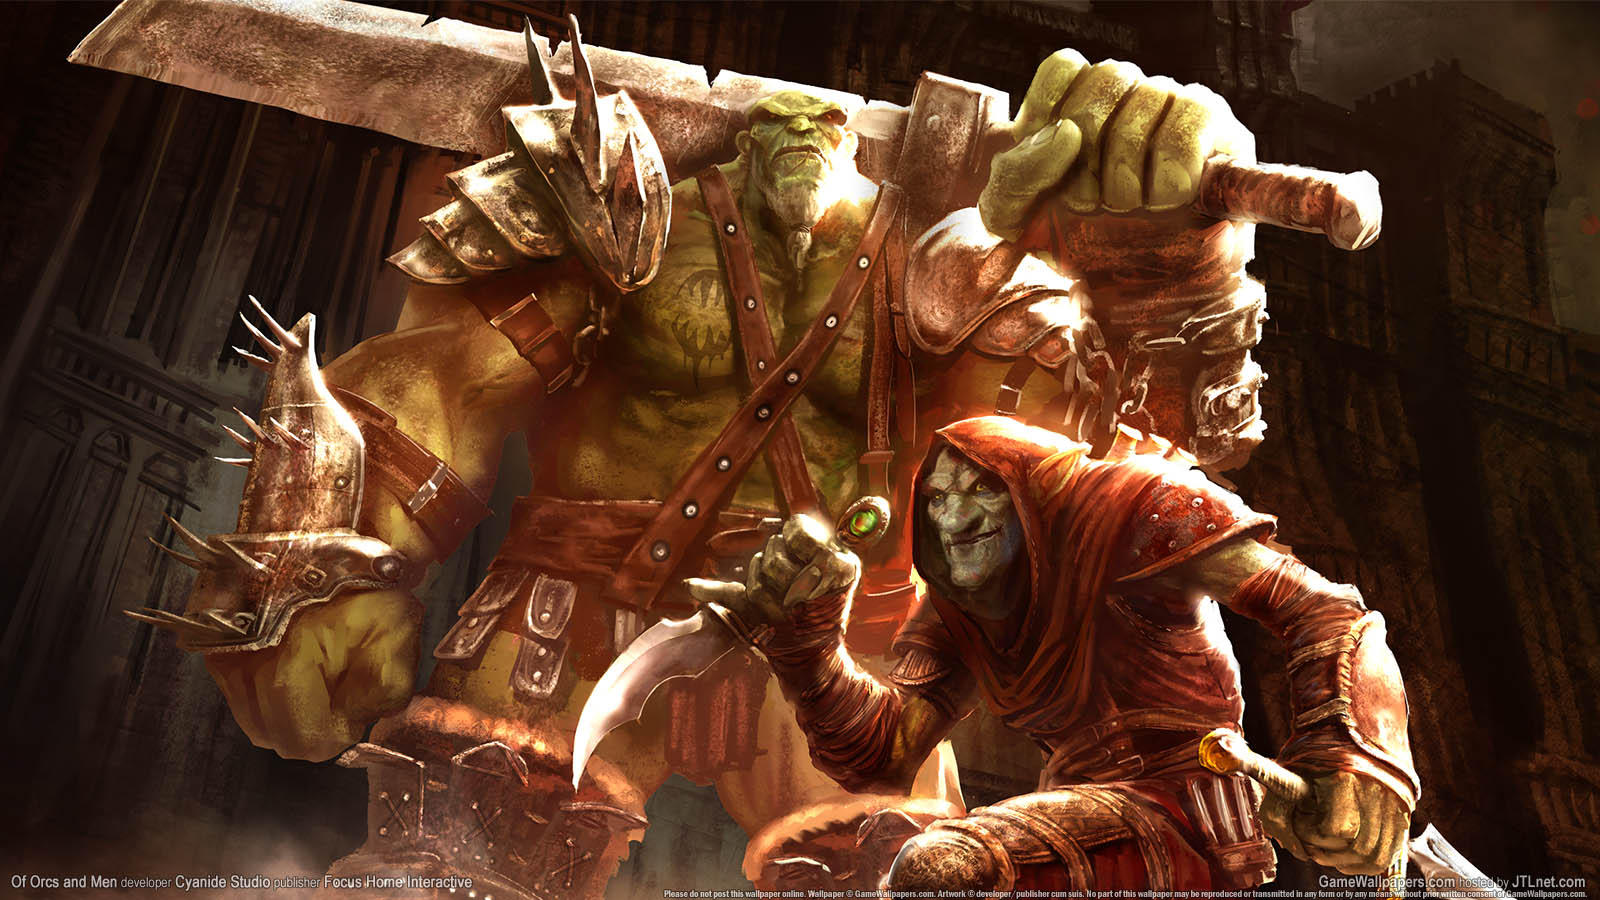 Of Orcs and Men wallpaper 01 1600x900